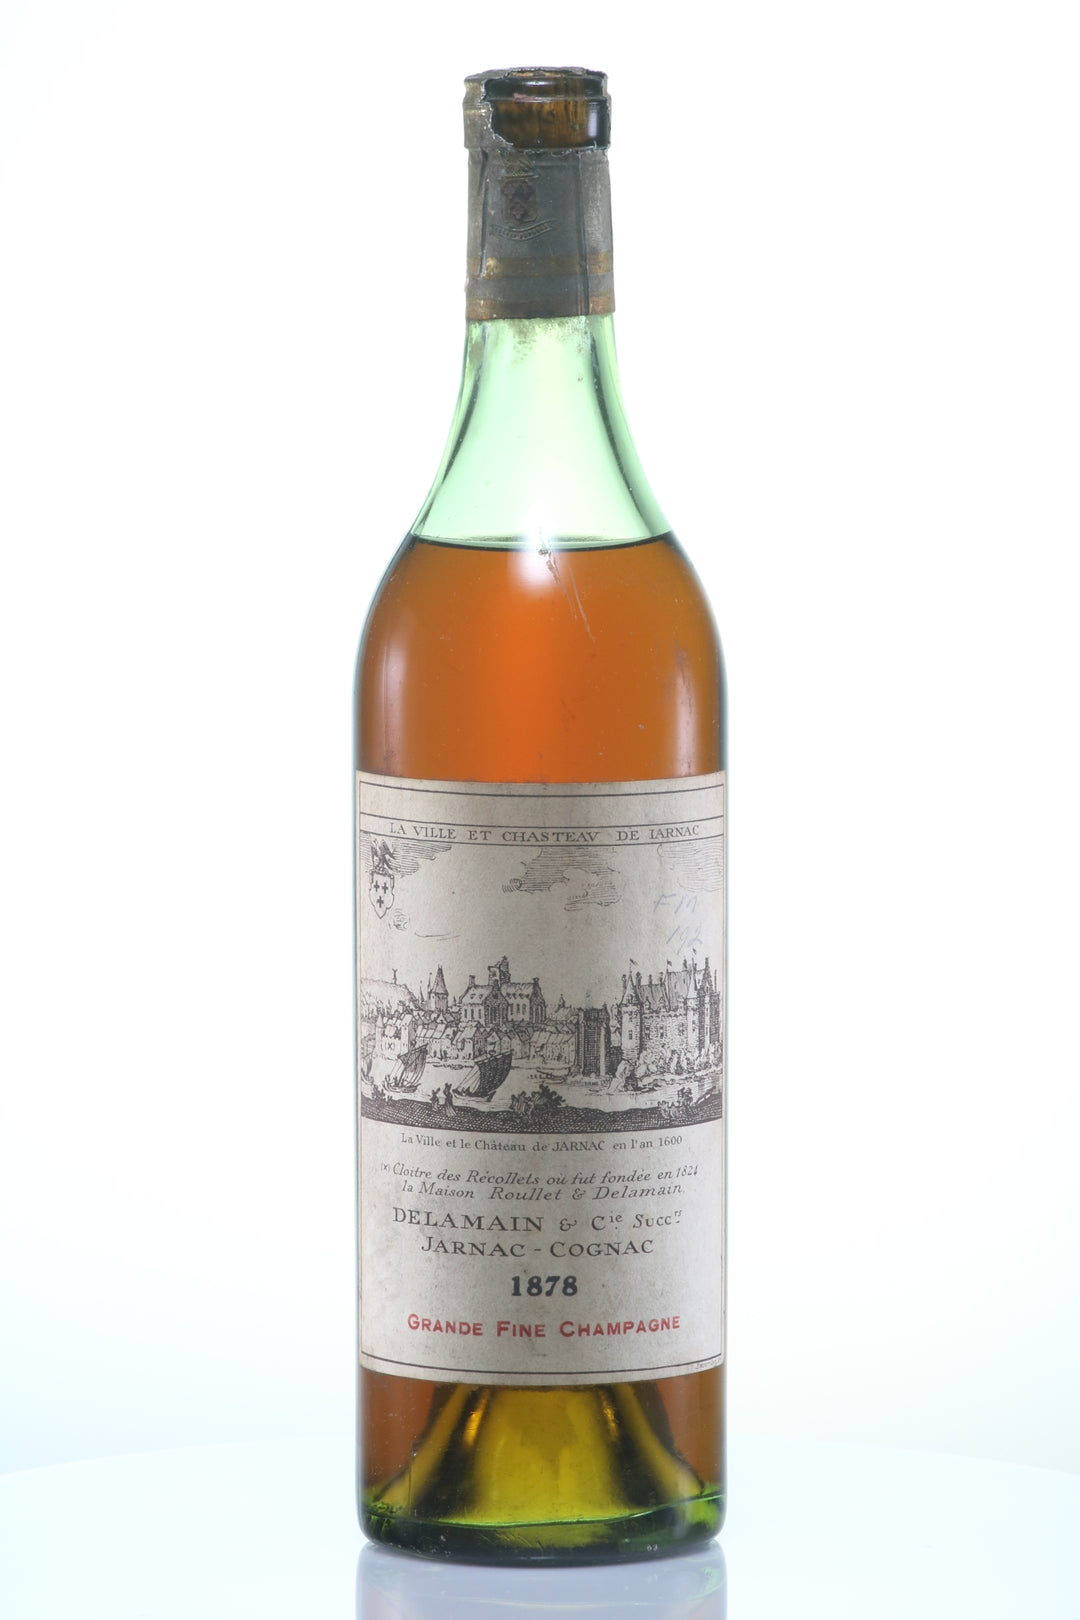 Roullet & Delamain 1878 Cognac Fine Champagne - Rue Pinard